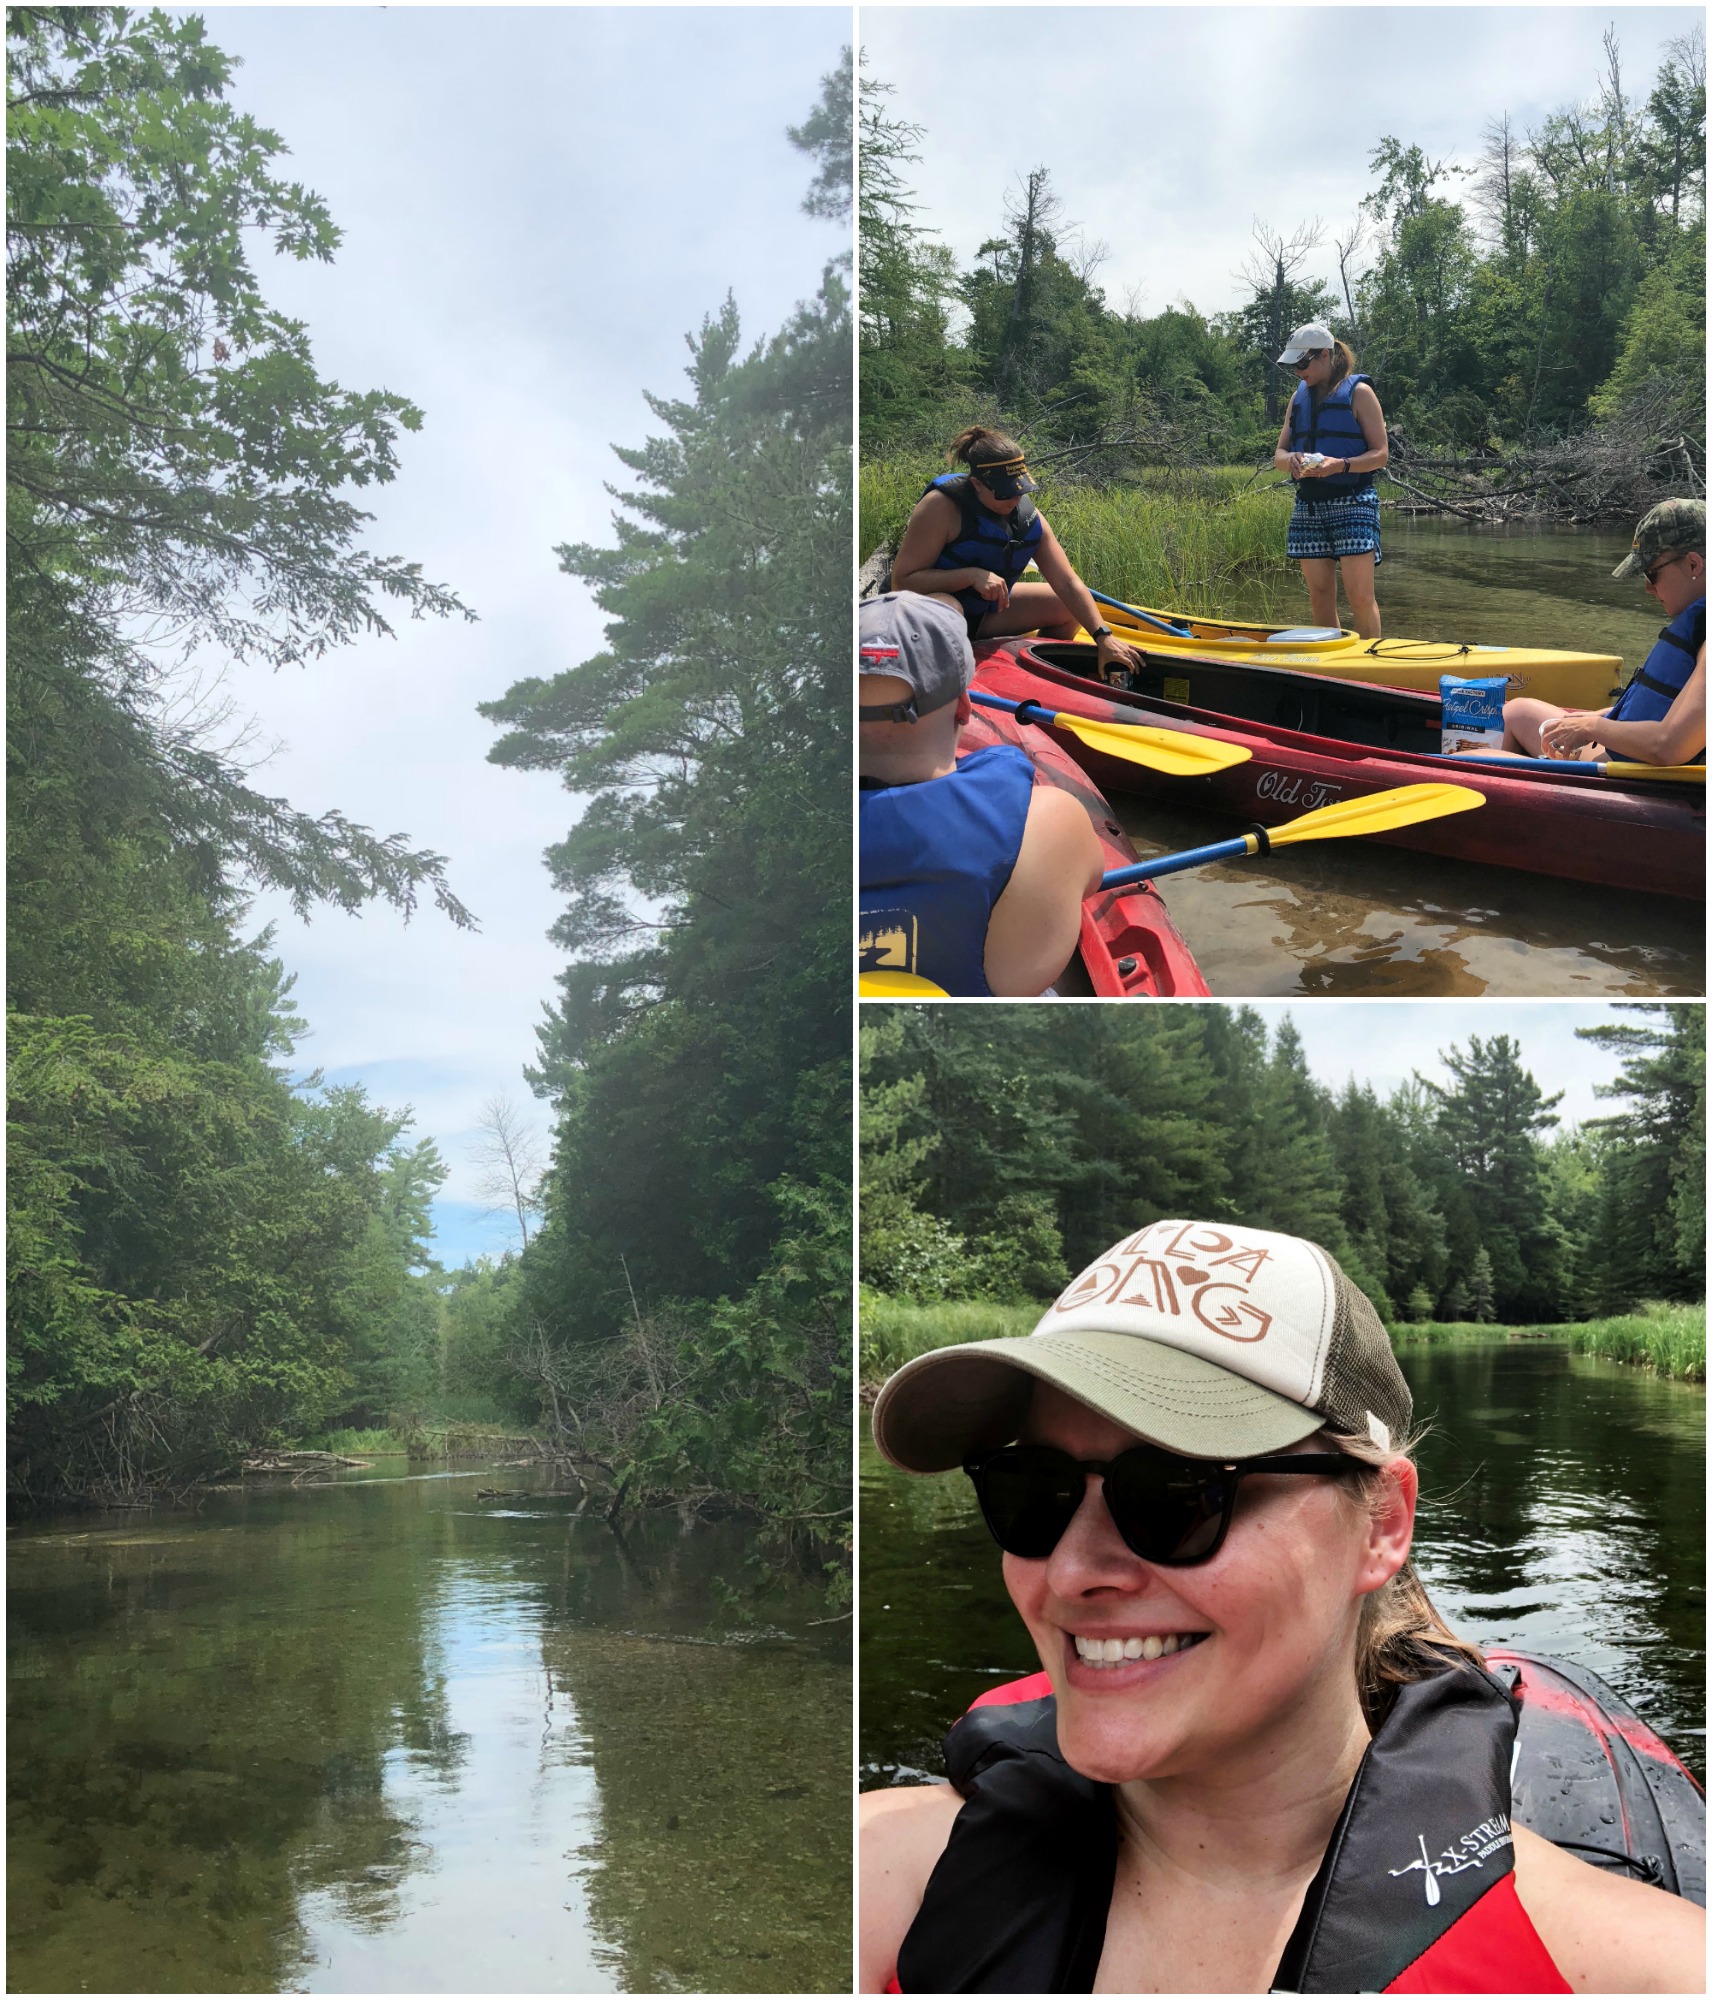 Crystal river, selfie and kayaks